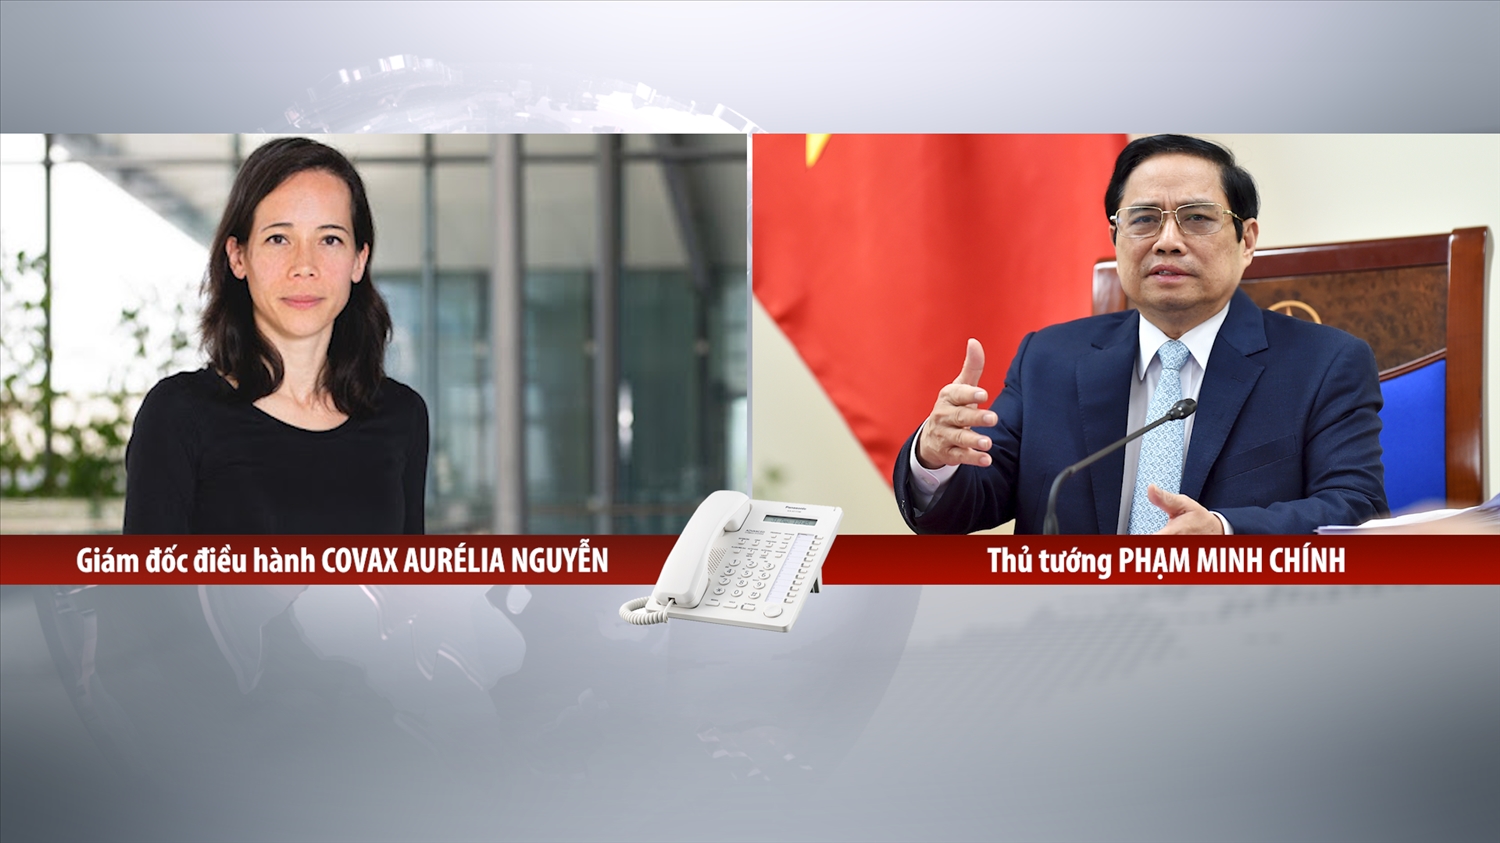 Họp trực tuyến với bà Aurélia Nguyen, Thủ tướng đề nghị COVAX ưu tiên phân bổ vaccine cho Việt Nam càng nhanh, càng nhiều càng tốt- Ảnh: VGP/Nhật Bắc